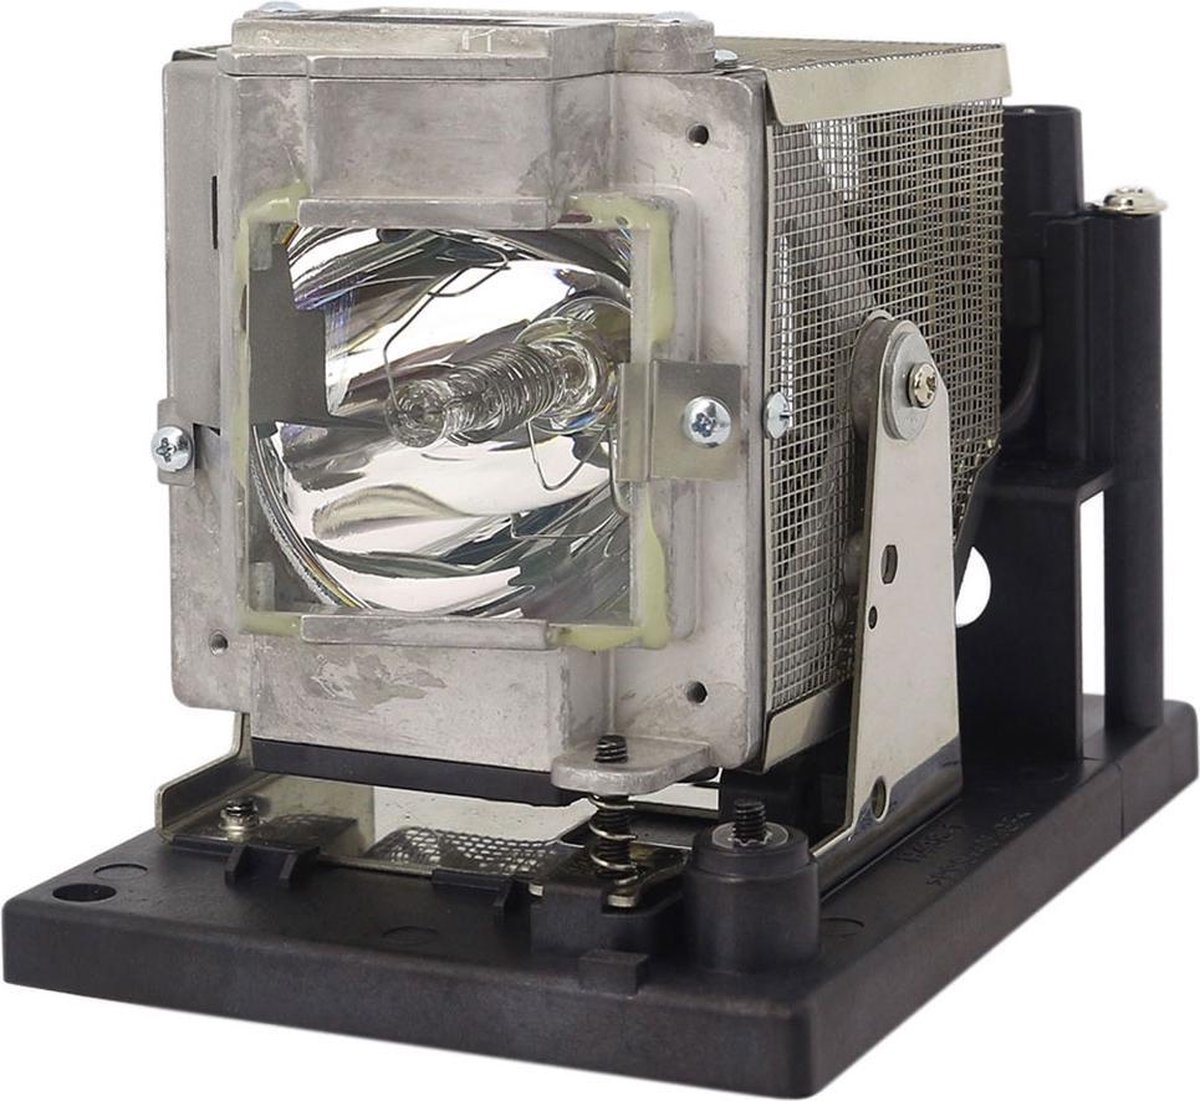 Beamerlamp geschikt voor de EIKI EIP-5000L beamer, lamp code AH-50001. Bevat originele UHP lamp, prestaties gelijk aan origineel.